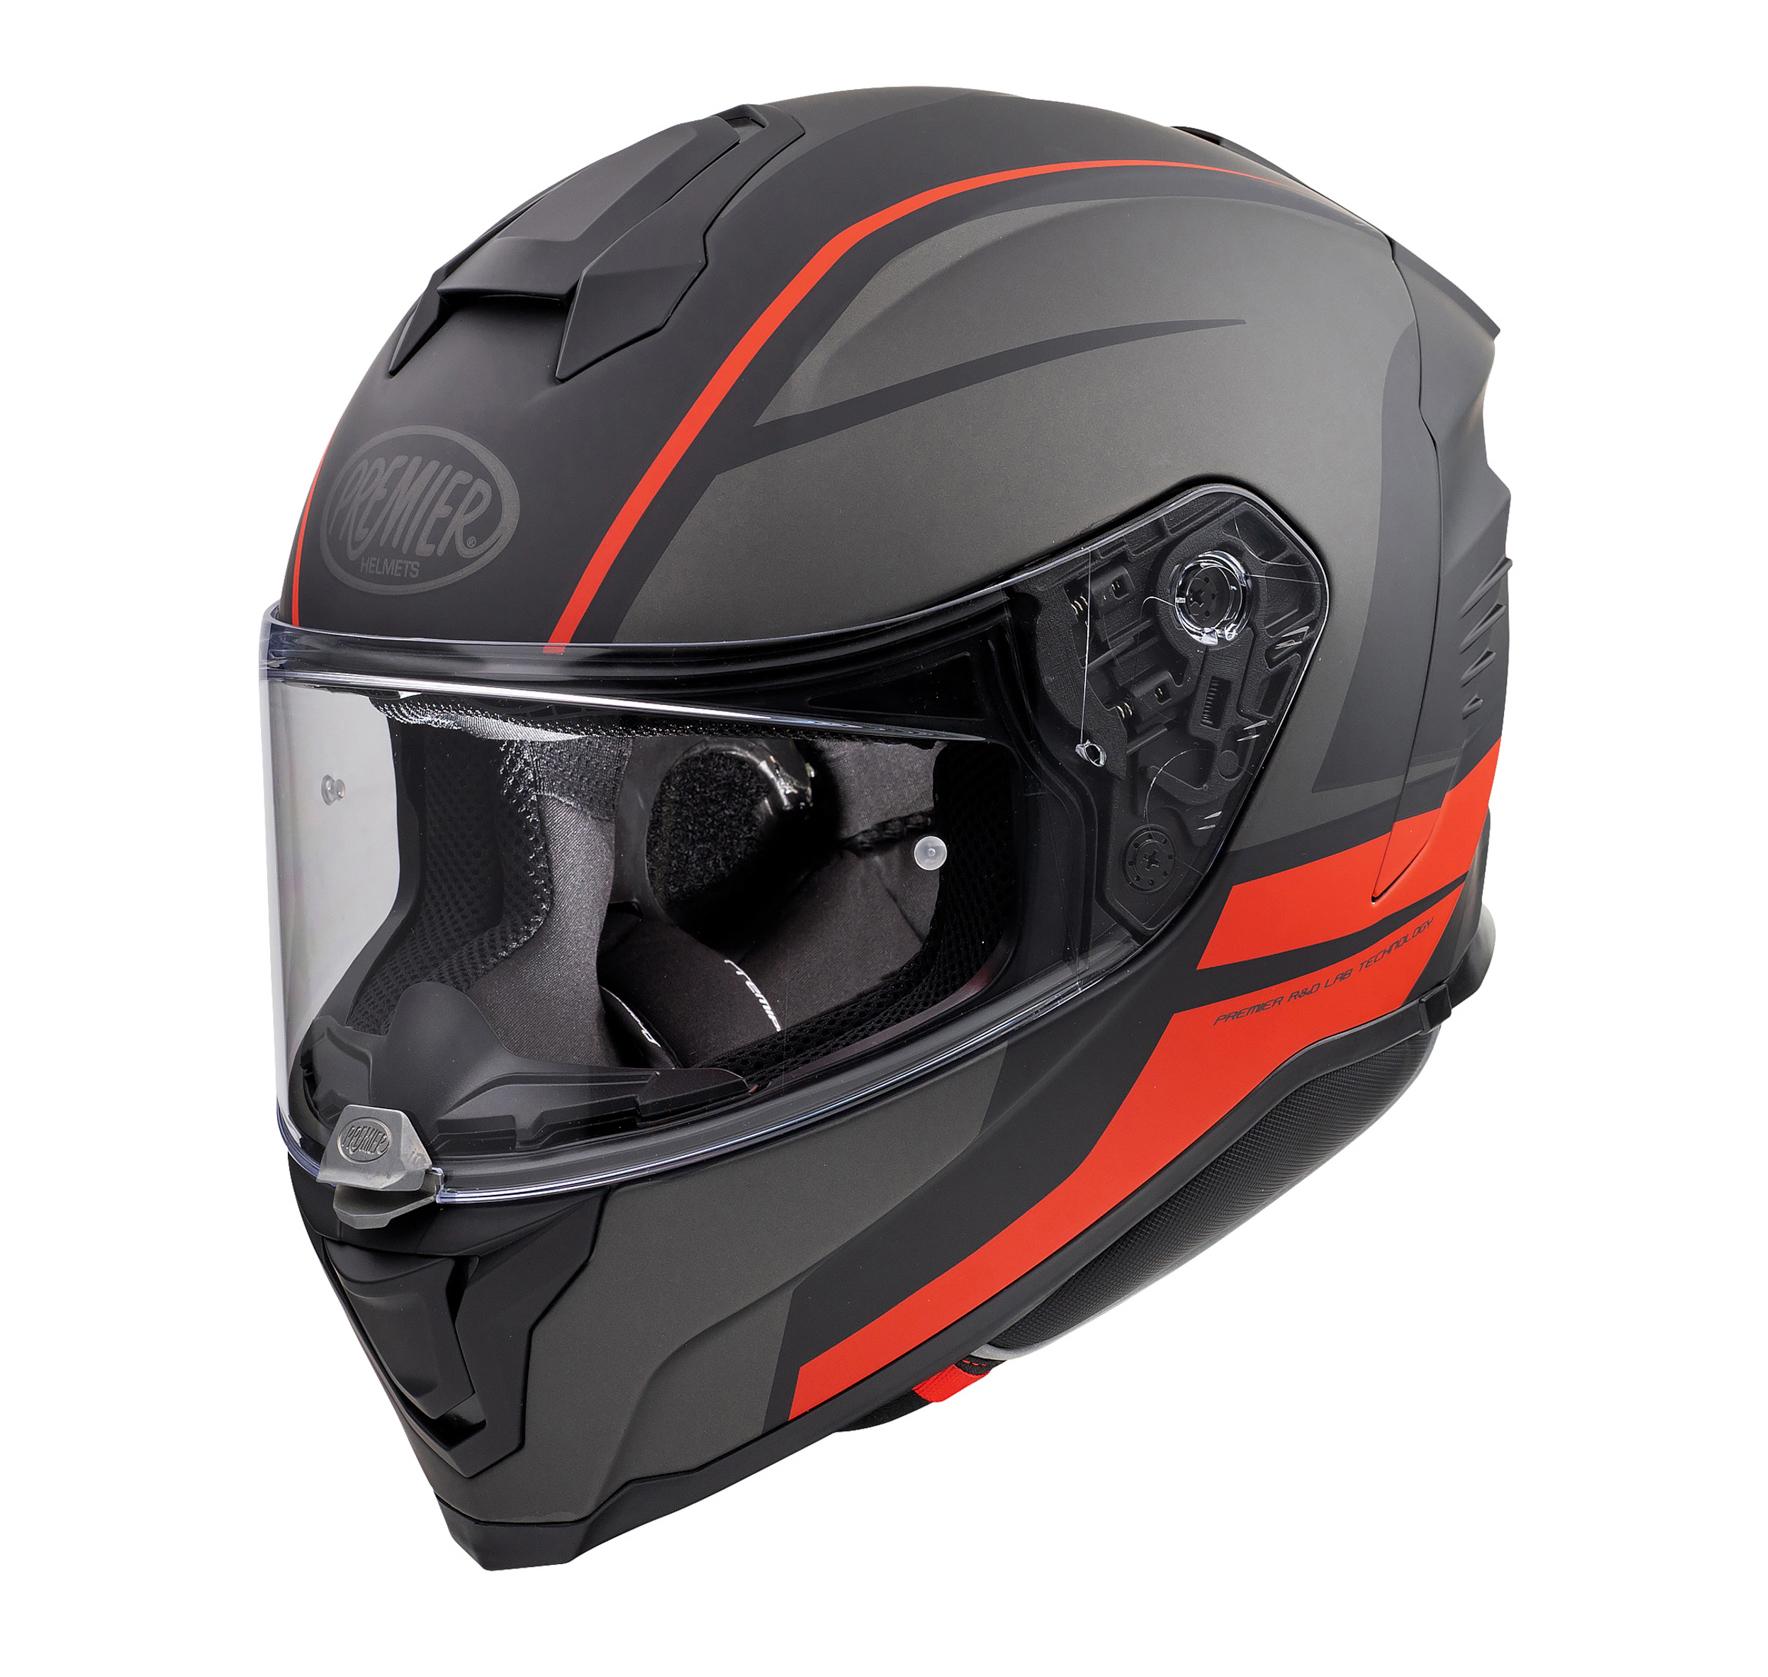 Premier Hyper De Full Face Motorcycle Helmet - Black/Red, S